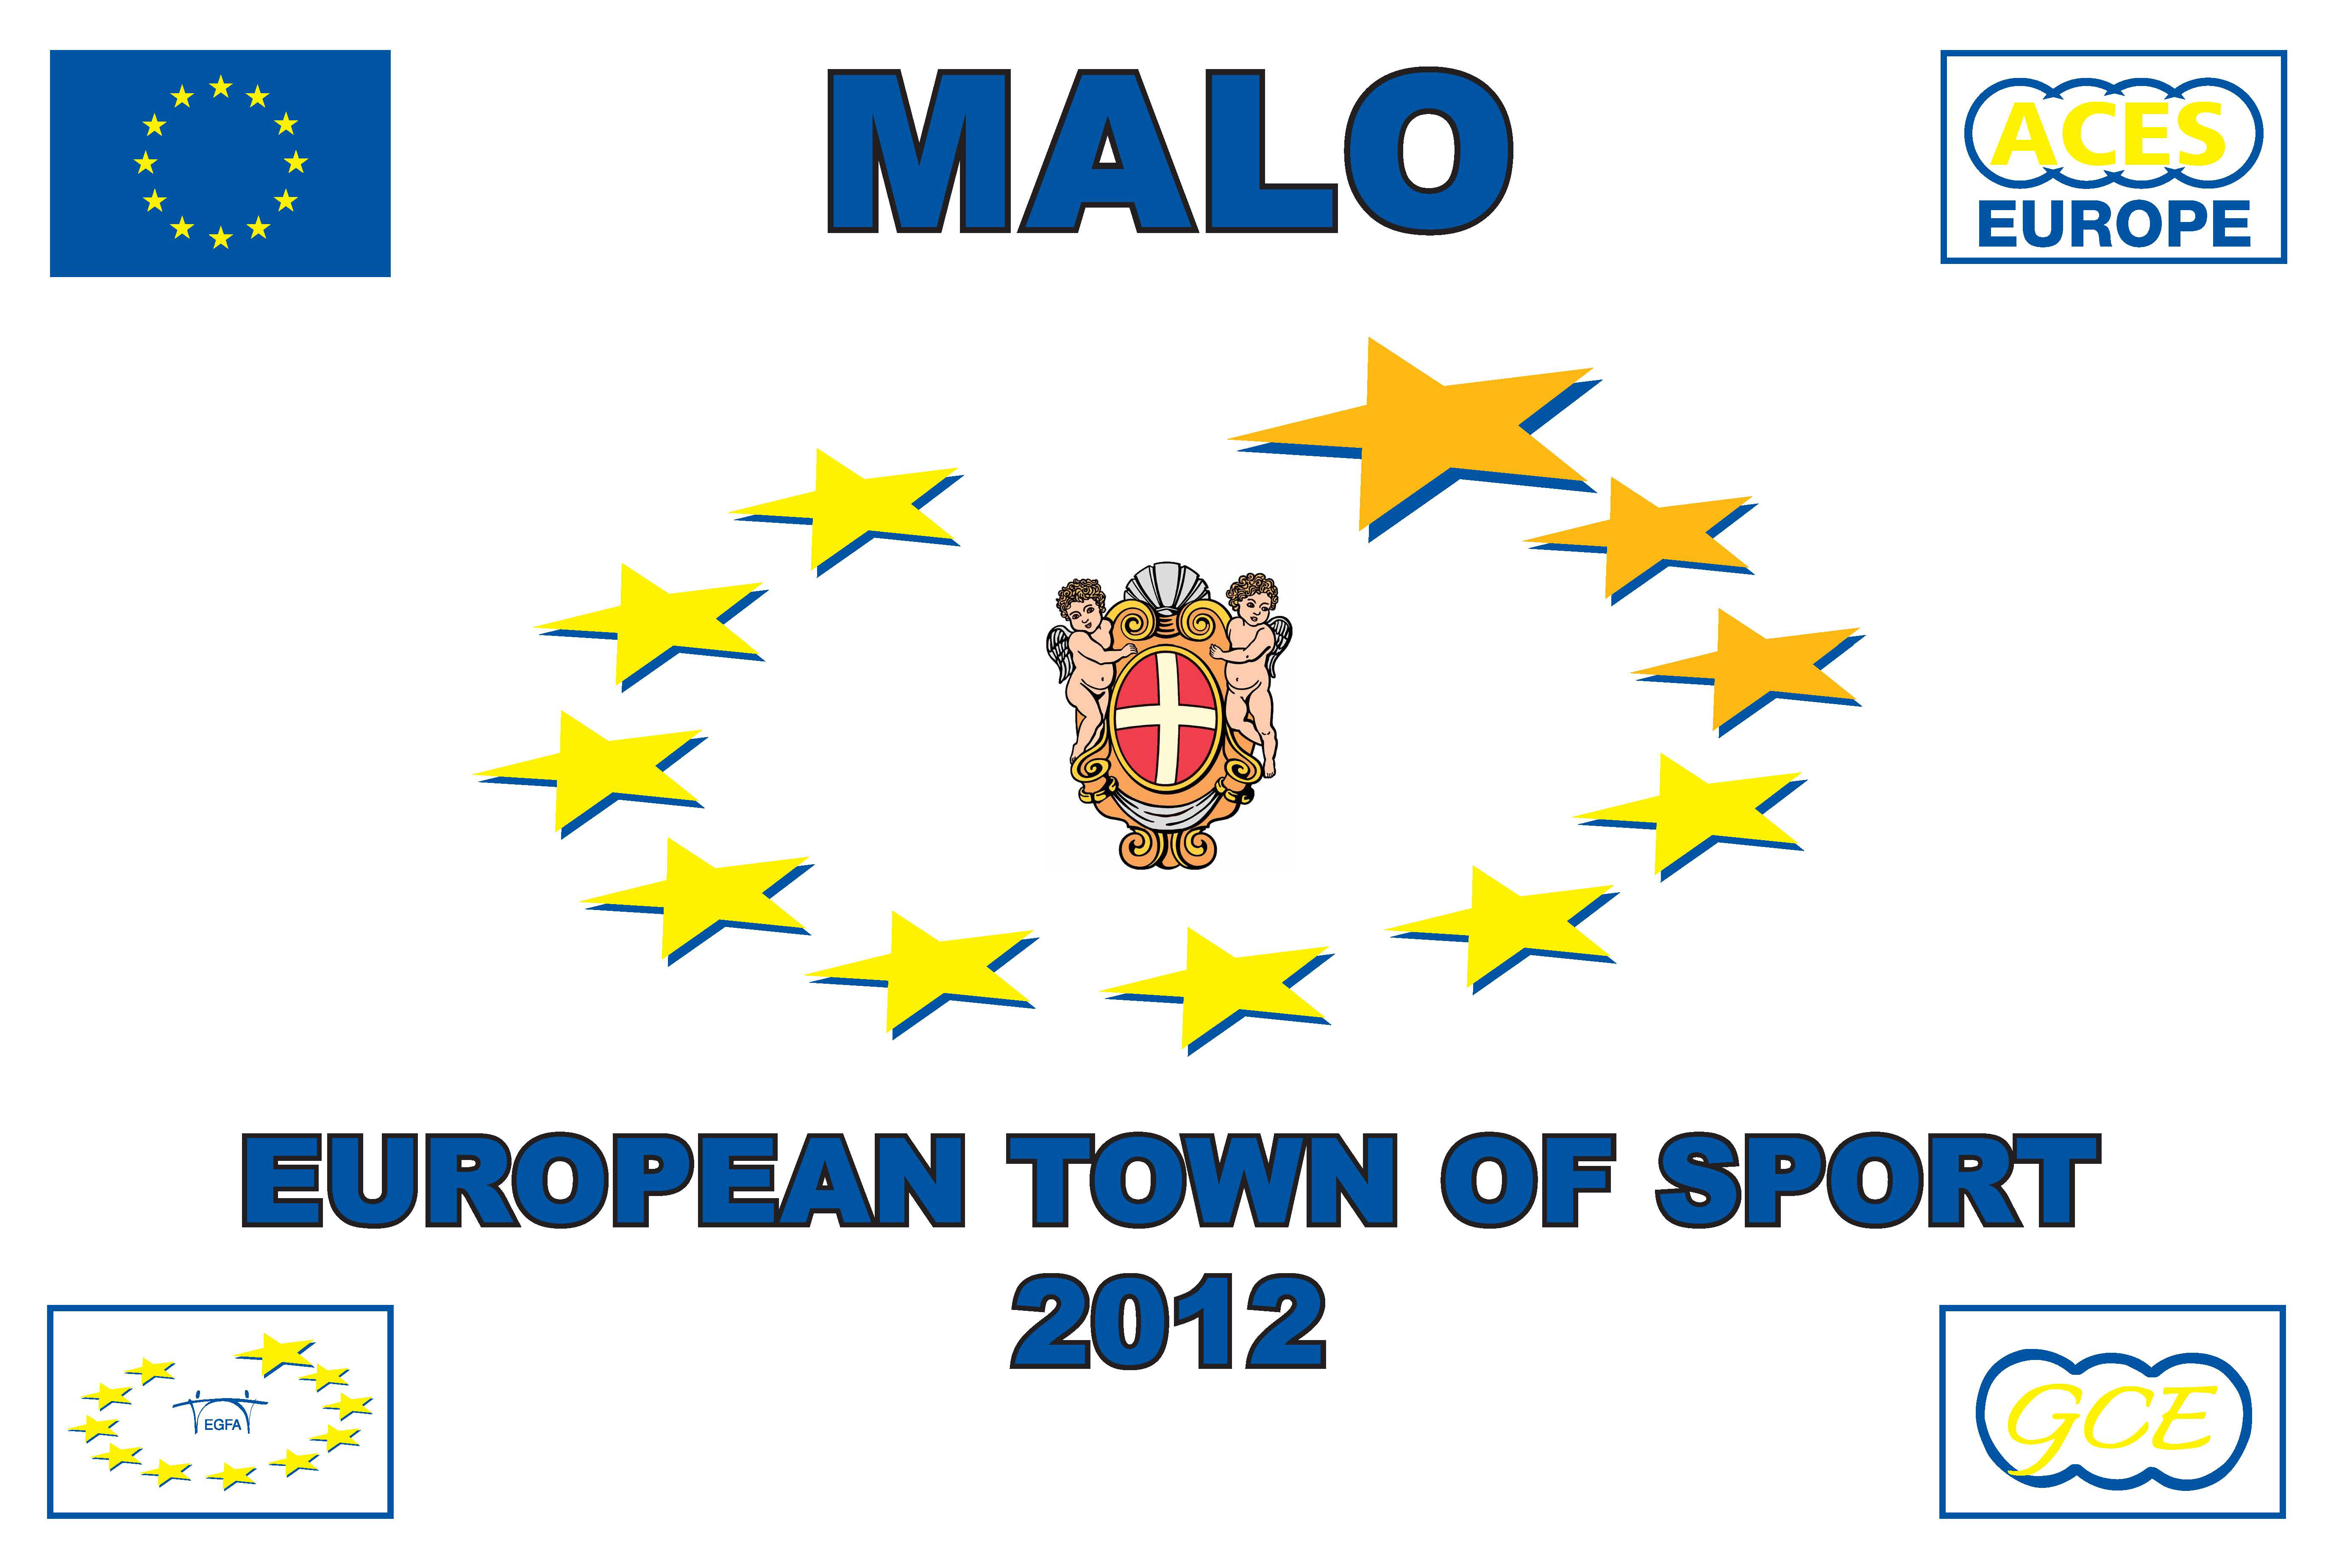 Comune europeo dello sport 2012